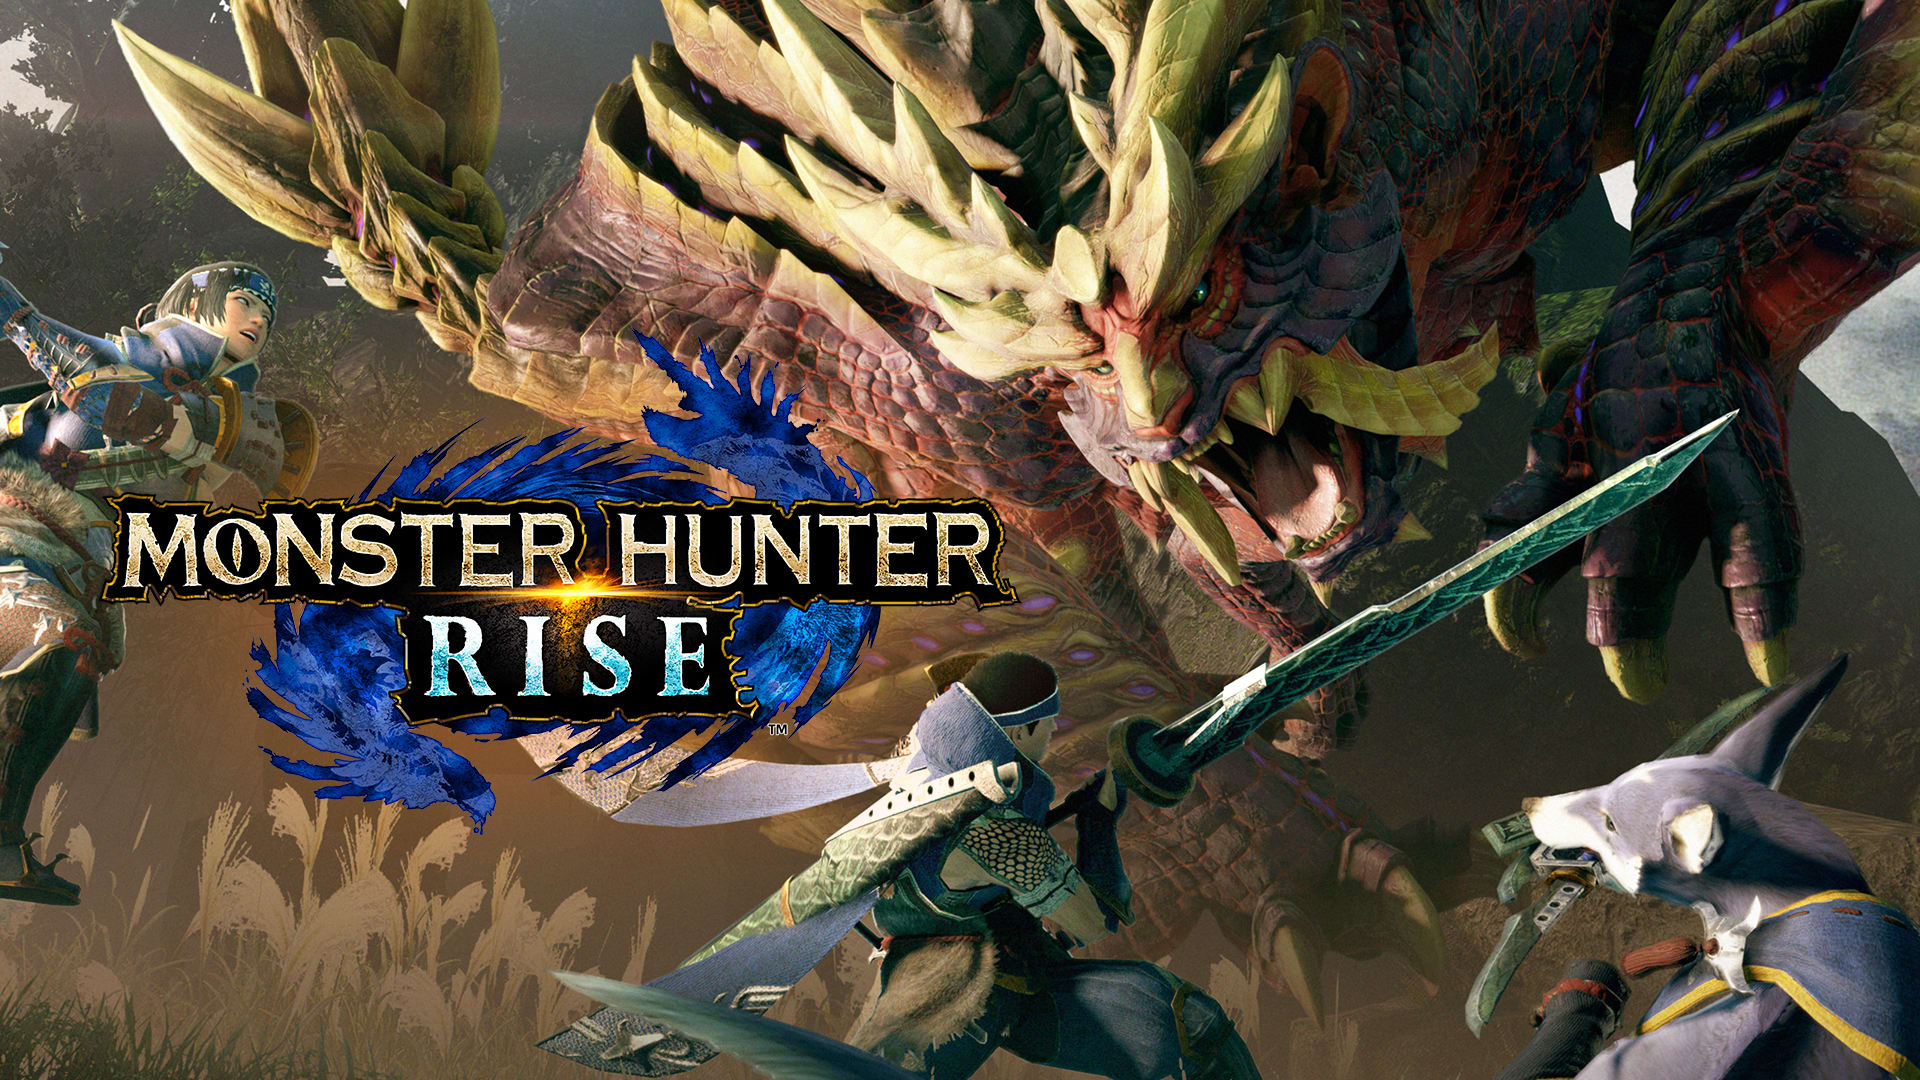 Capcom anuncia evento digital de Monster Hunter Rise: Sunbreak para semana  que vem